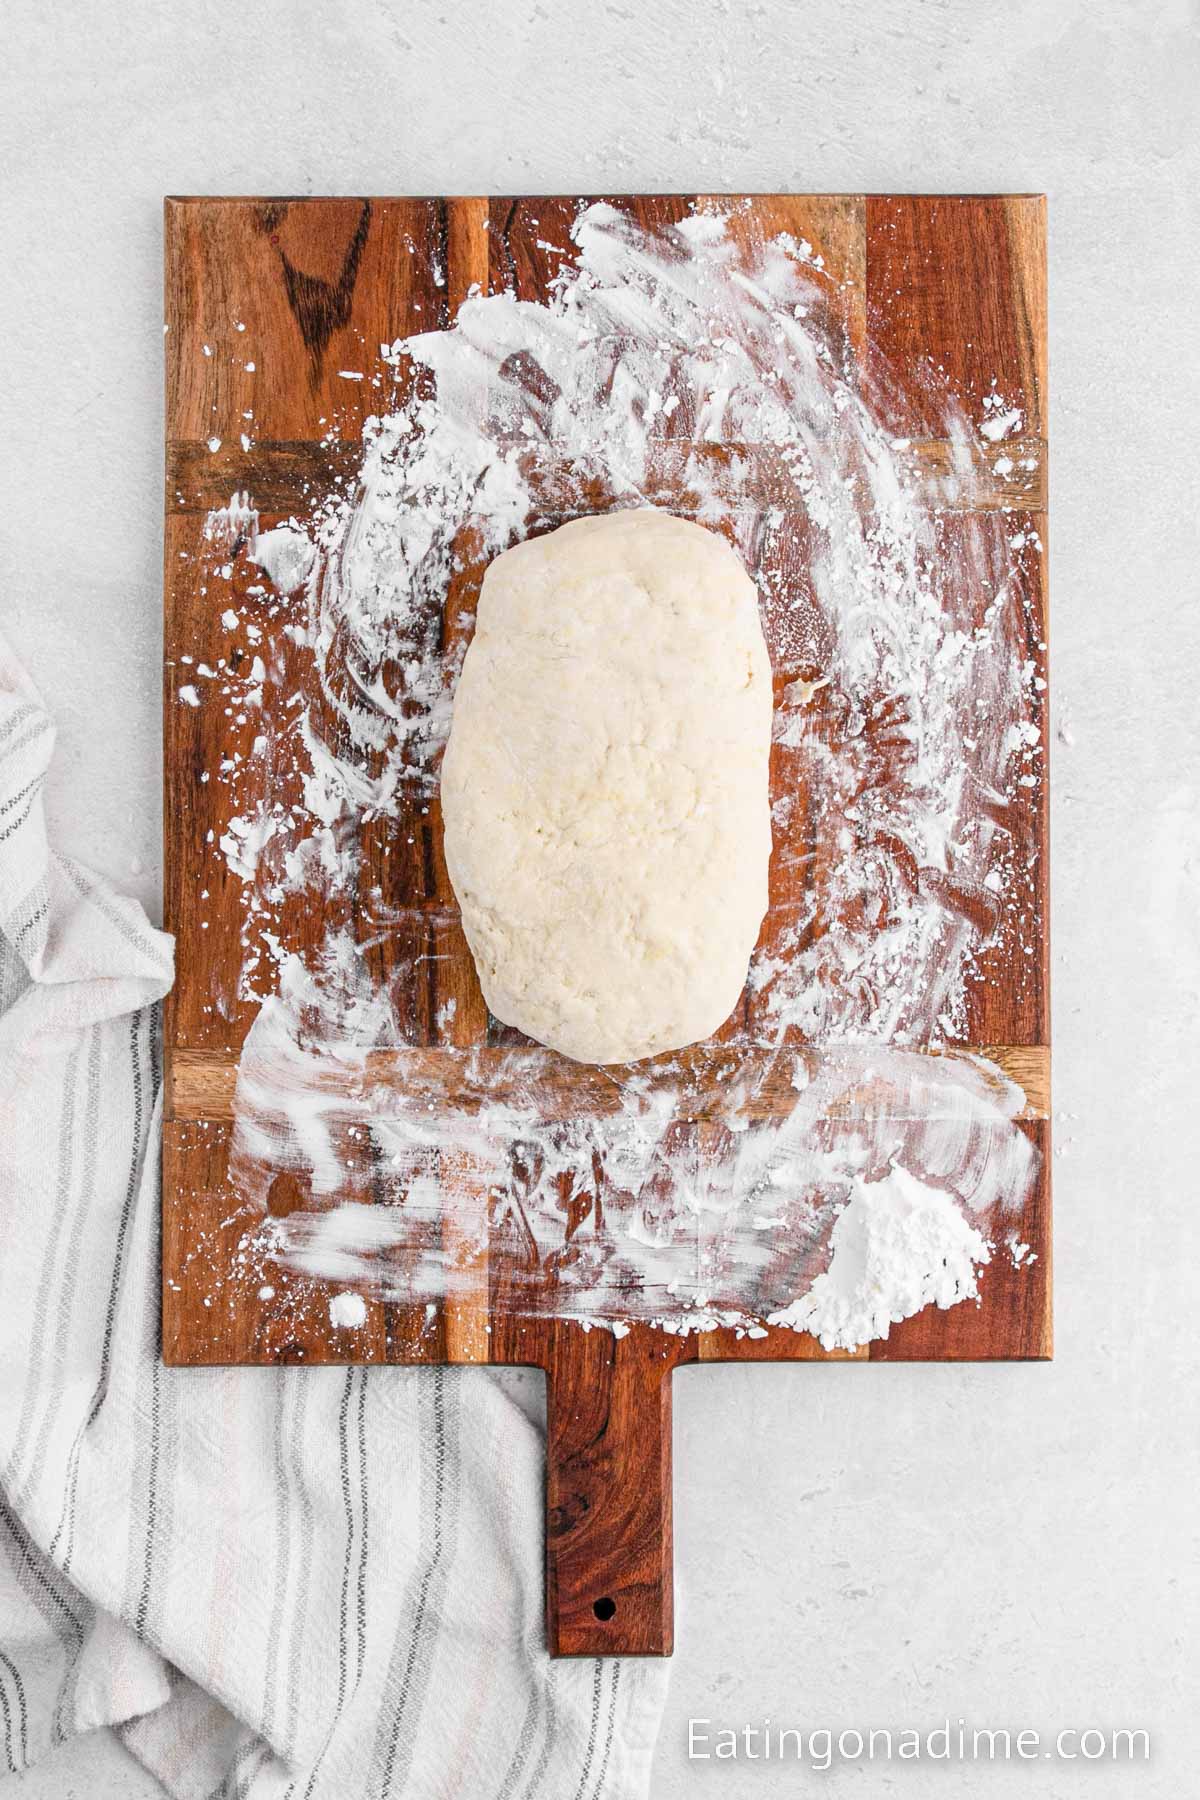 Kneading the dough on a floured surface